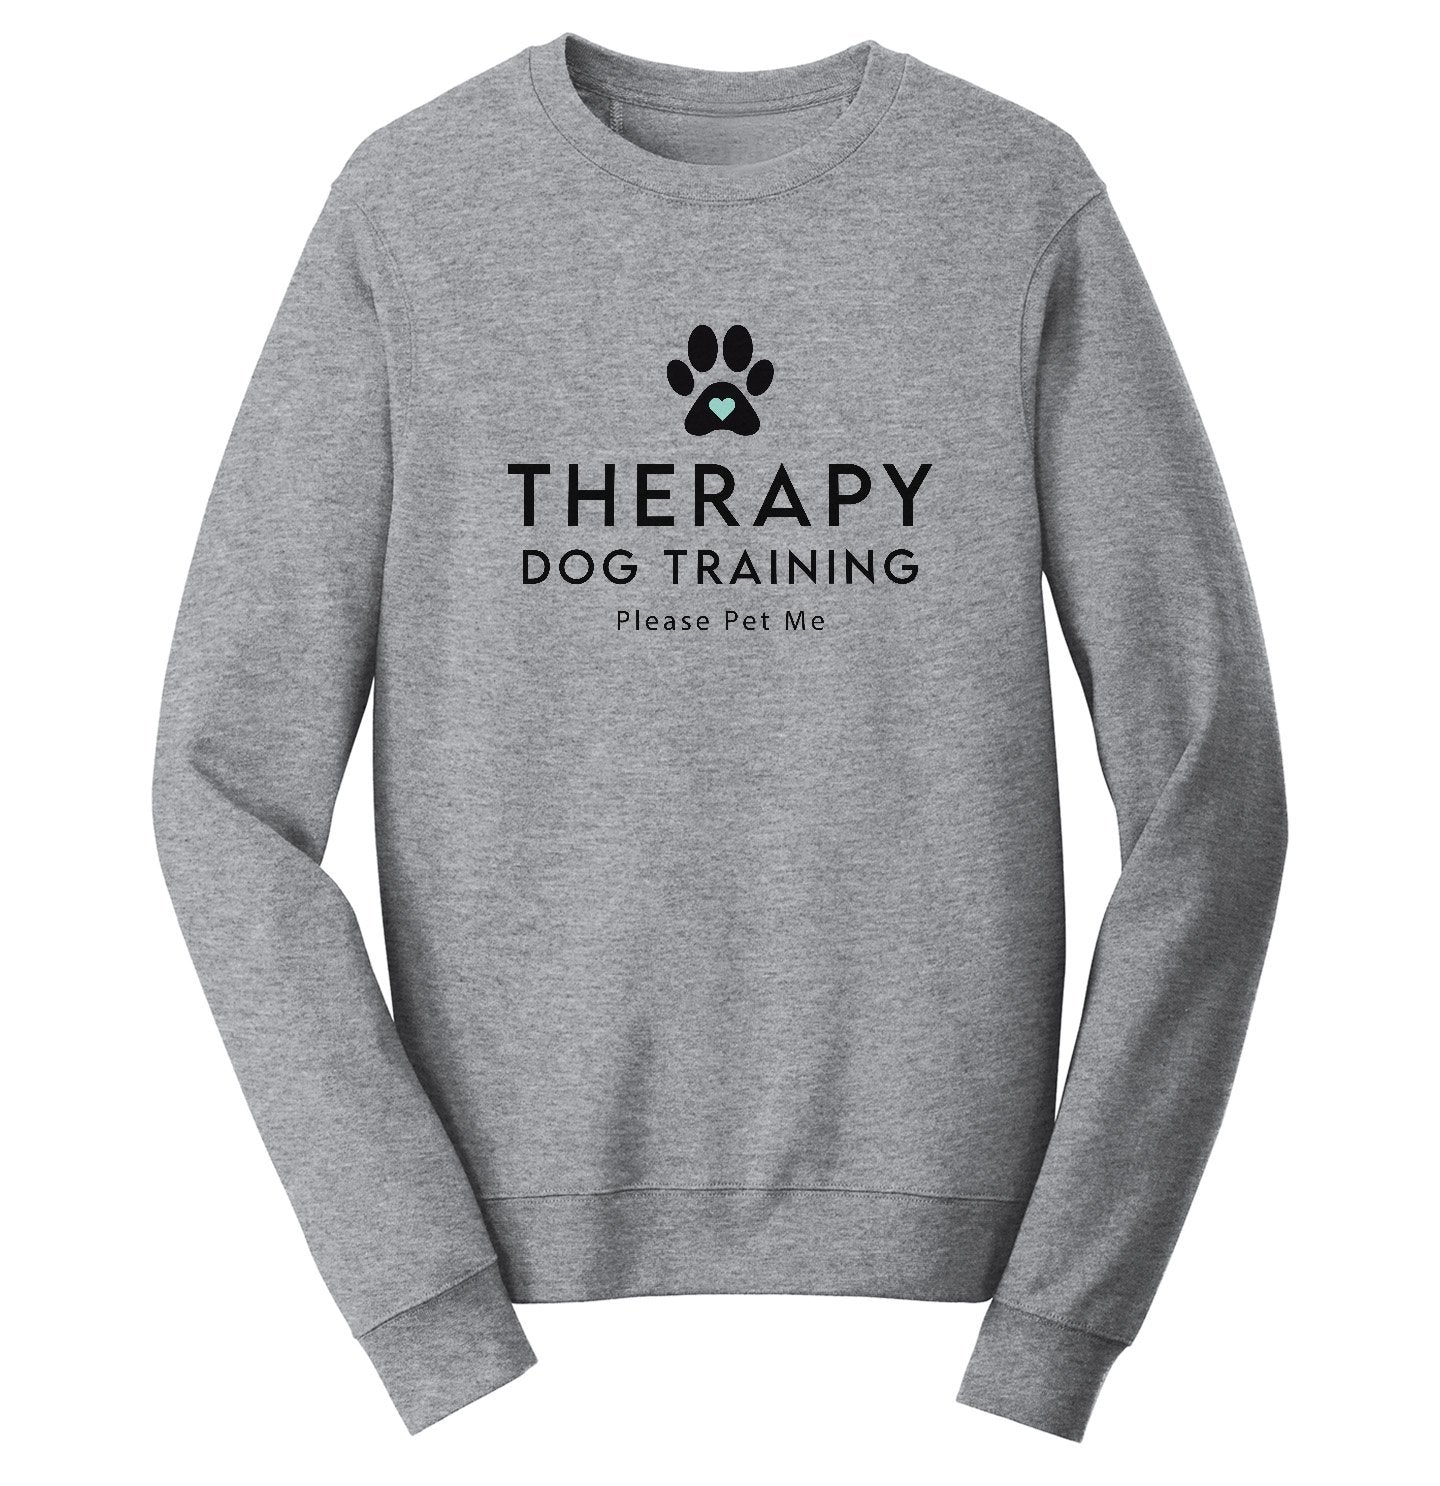 Therapy Dog Training - Adult Unisex Crewneck Sweatshirt